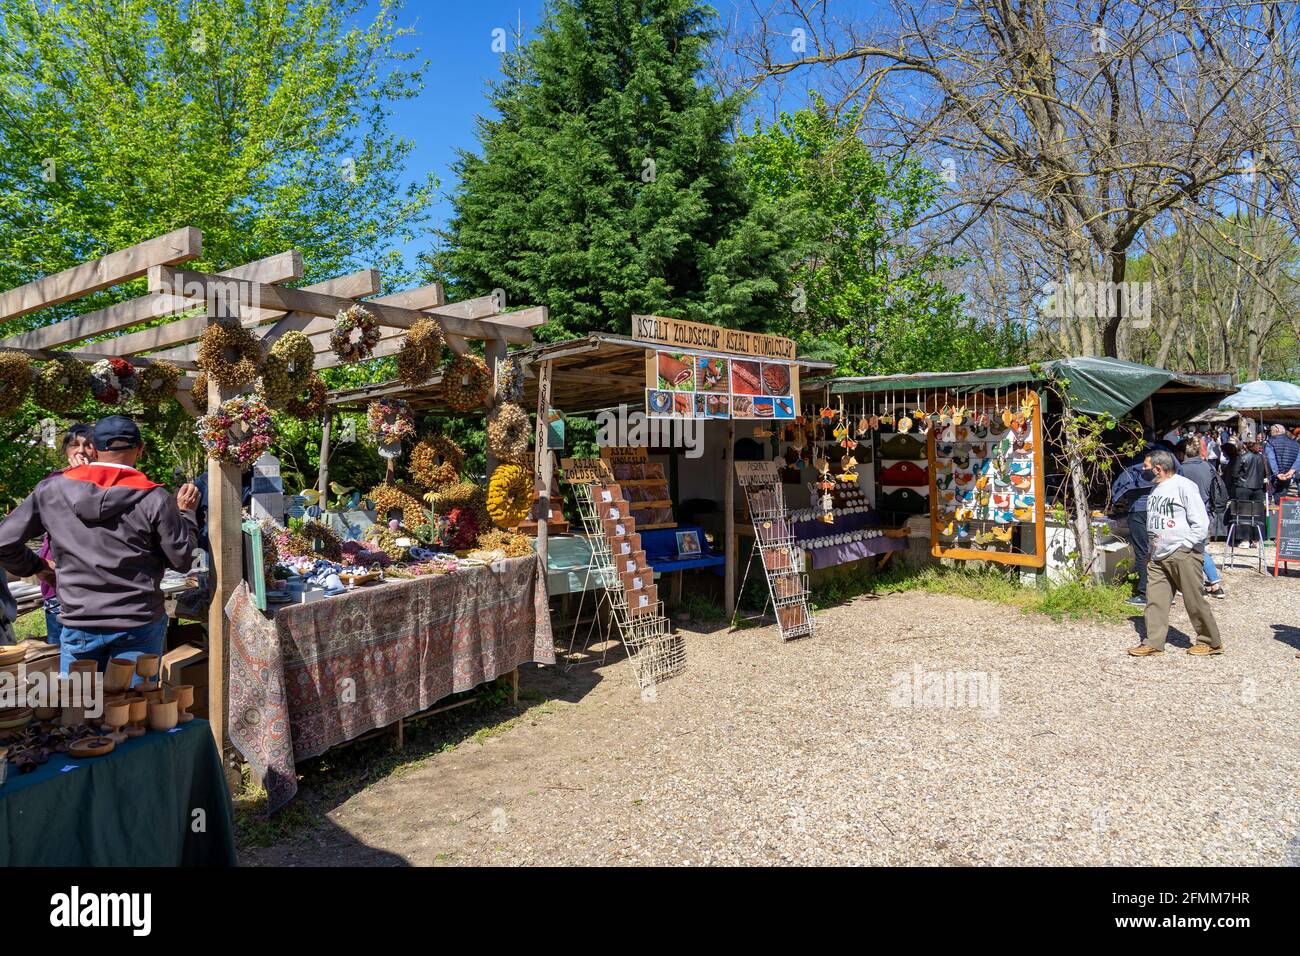 04.10.2021 - Kaptalantoti, Hungría: Kaptalantoti liliomkerti mercado de agricultores feria de tiendas al aire libre en la cuenca del kali . Foto de stock